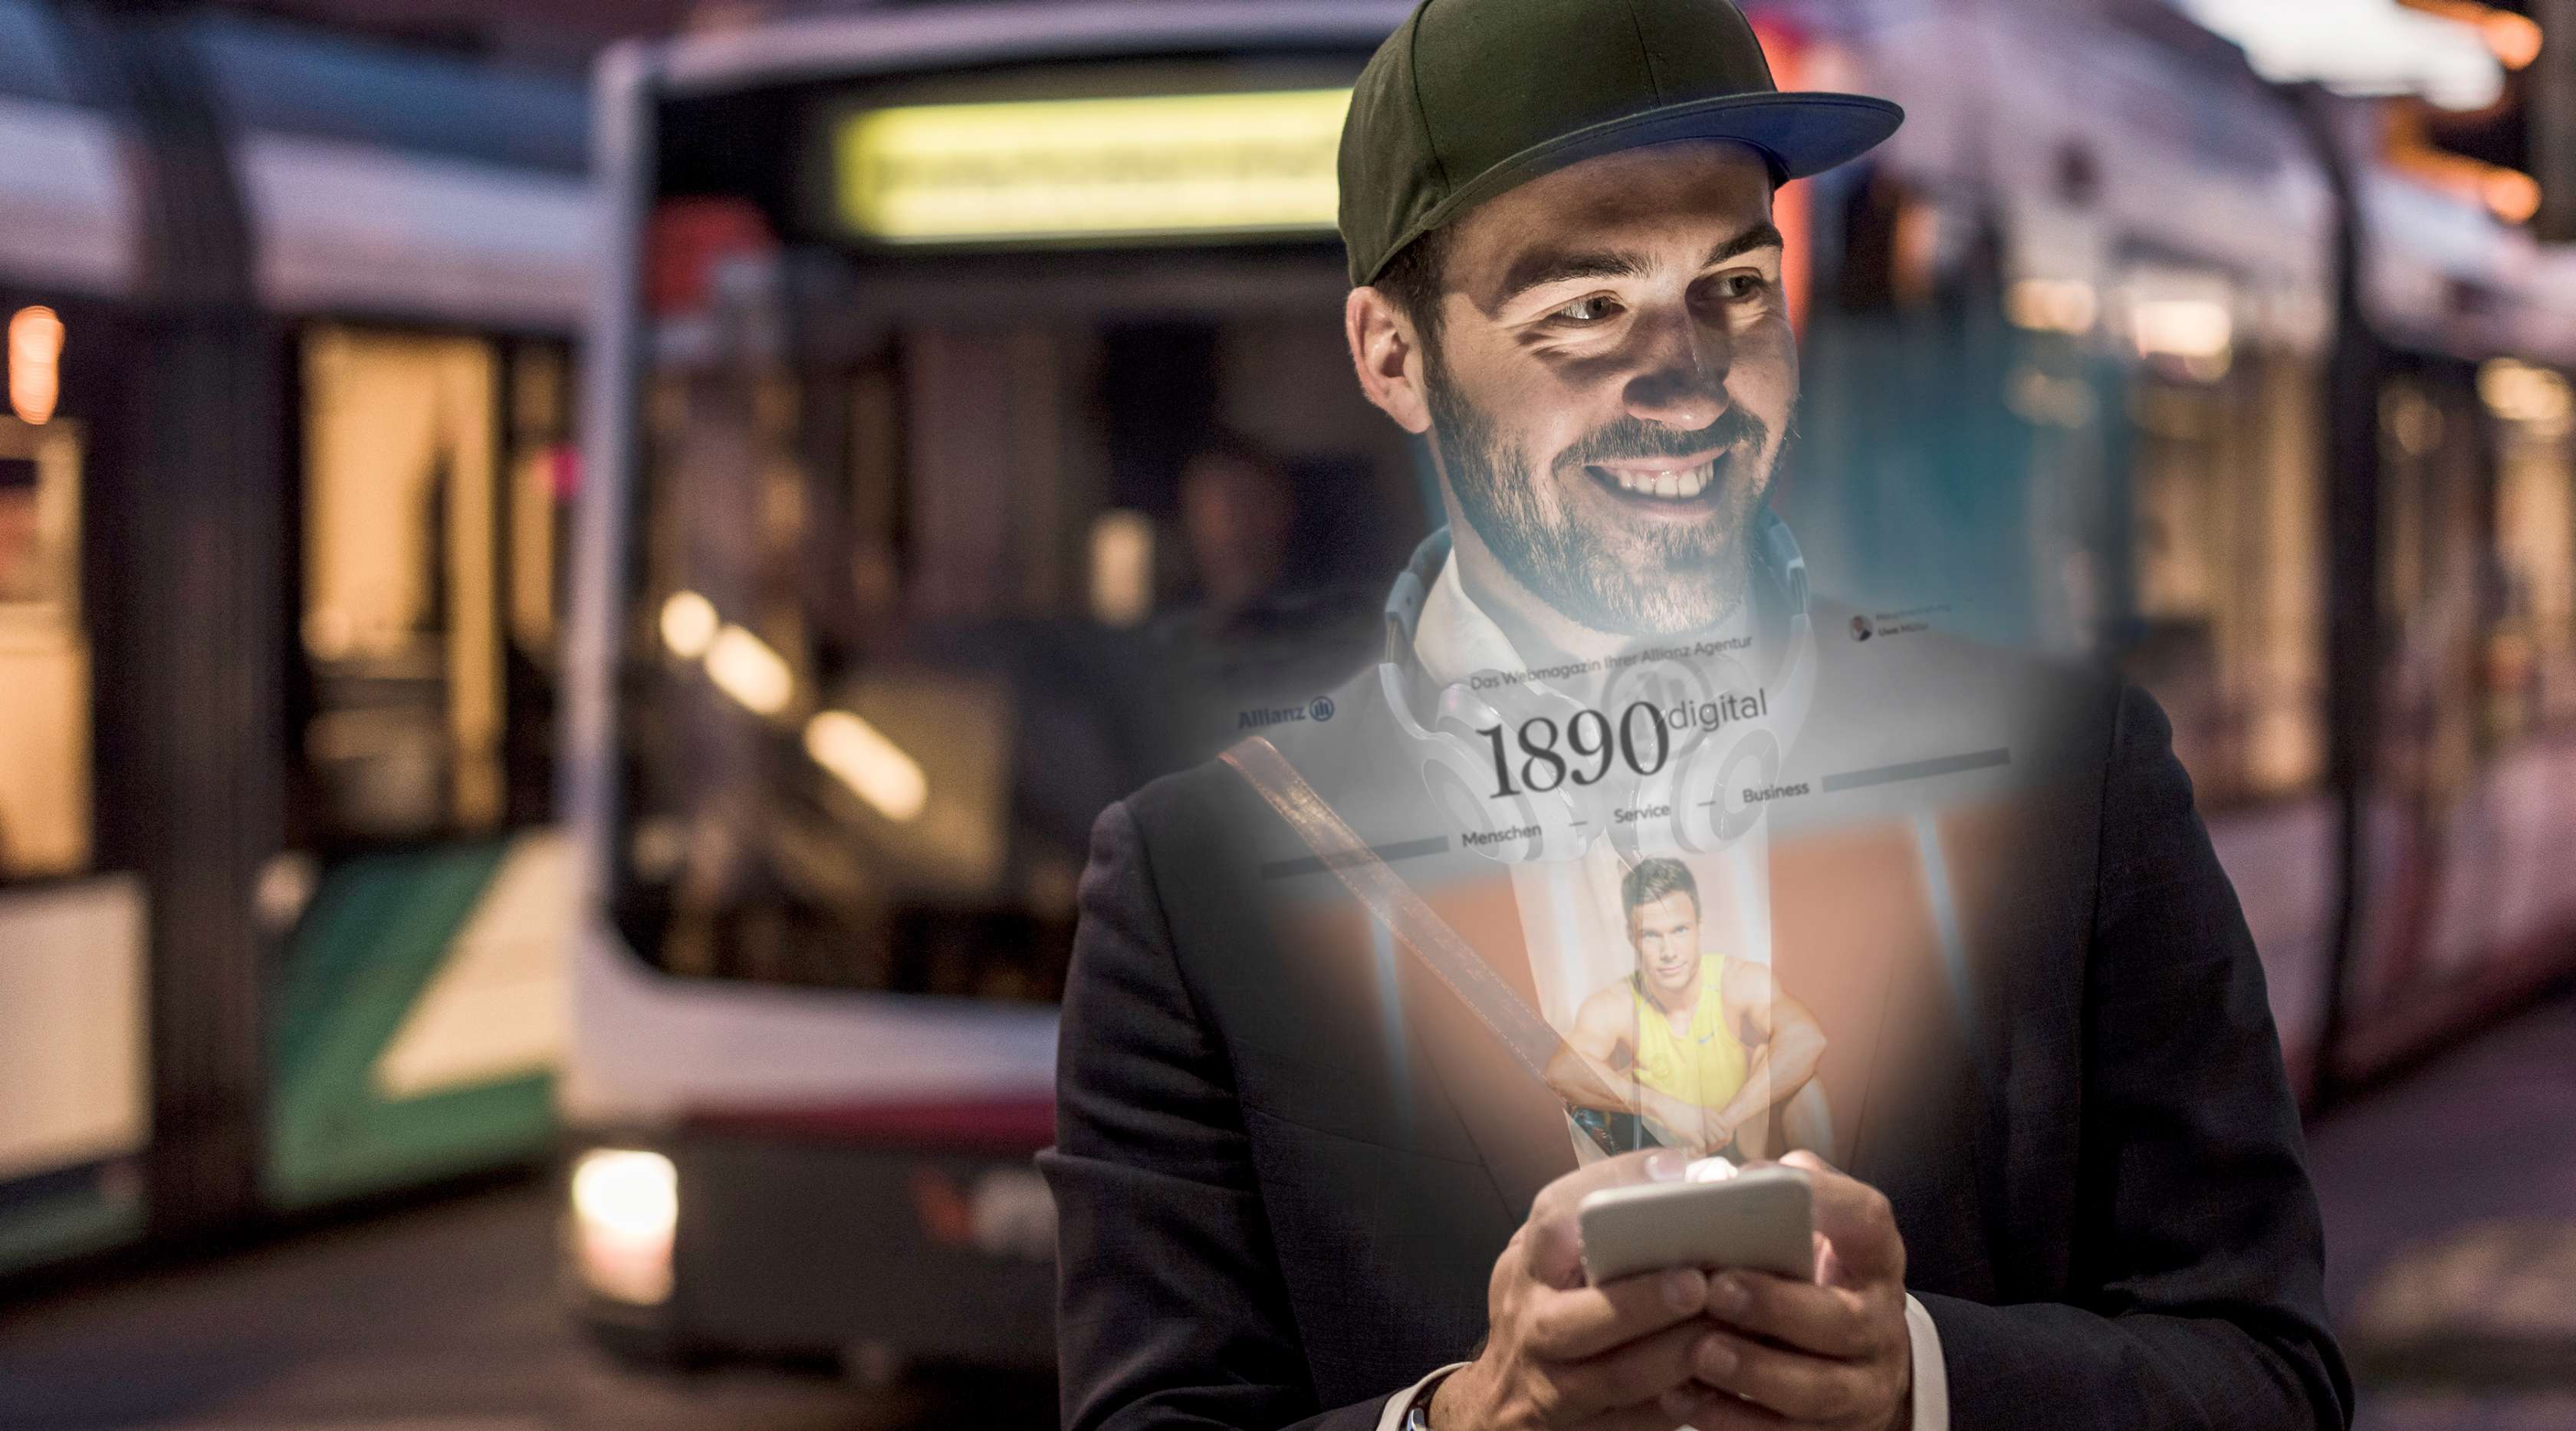 Mann steht vor einem Bus und sein Smartphone erleuchtet sein Gesicht